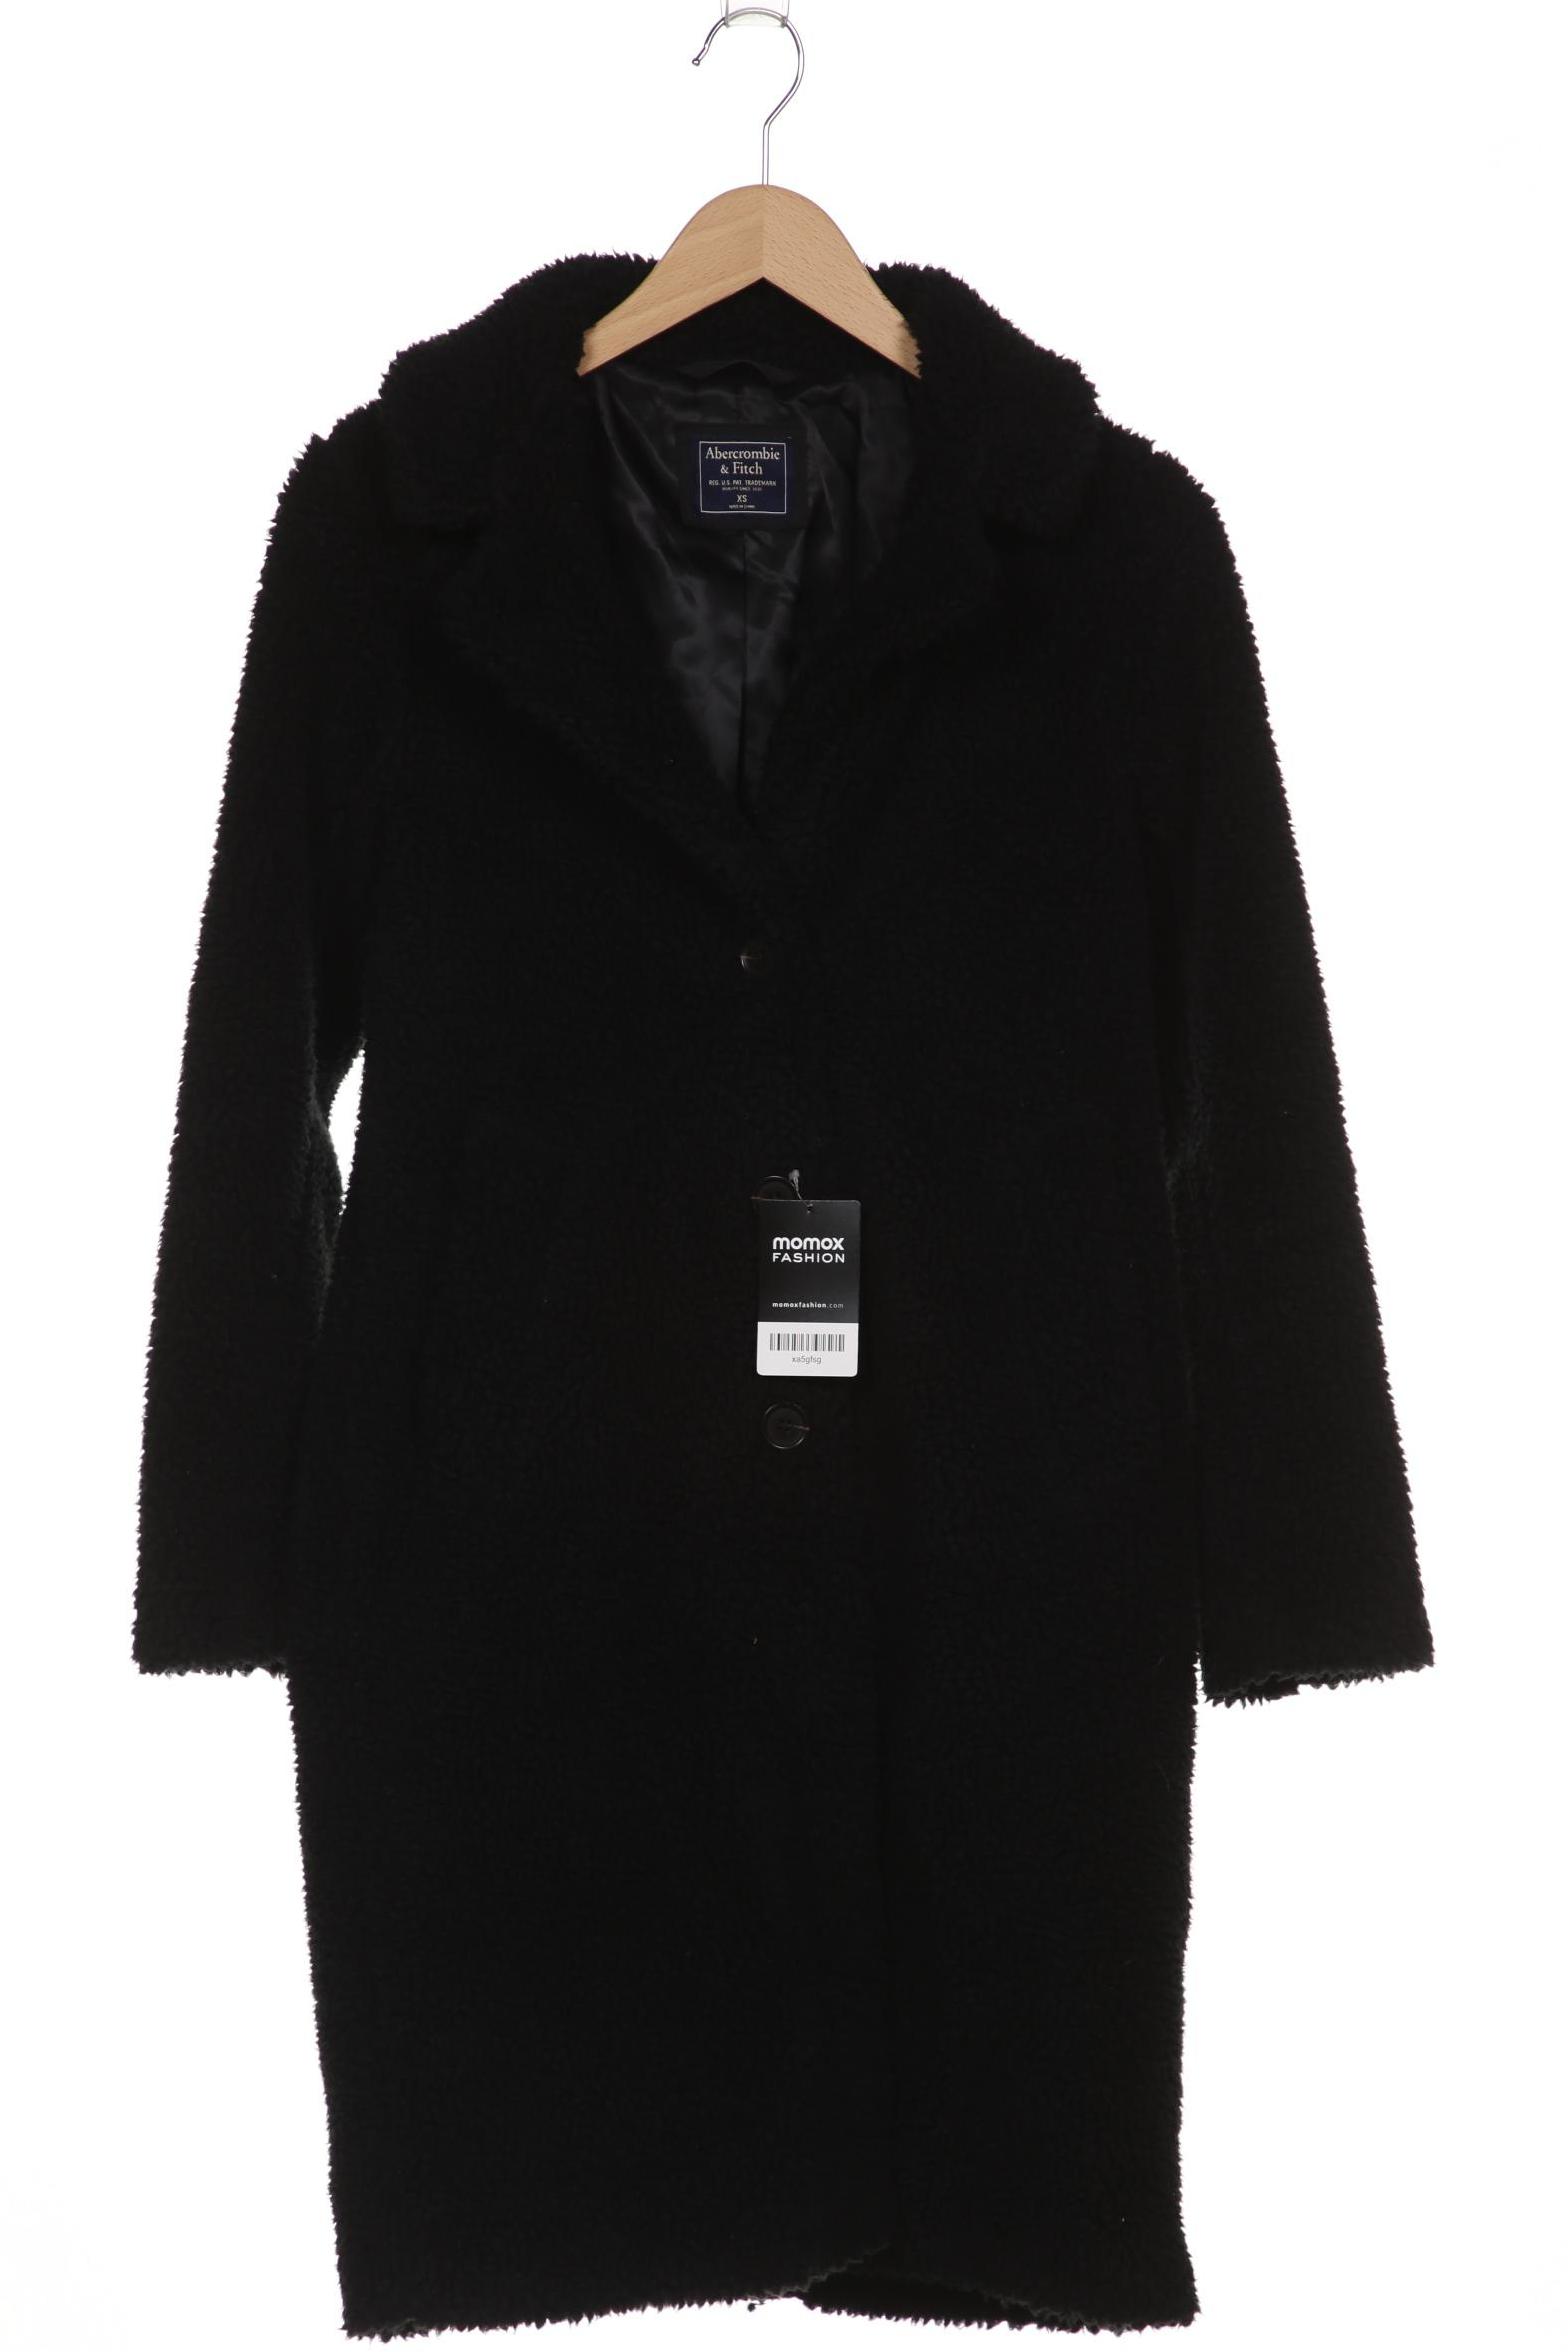 Abercrombie & Fitch Damen Mantel, schwarz von Abercrombie & Fitch